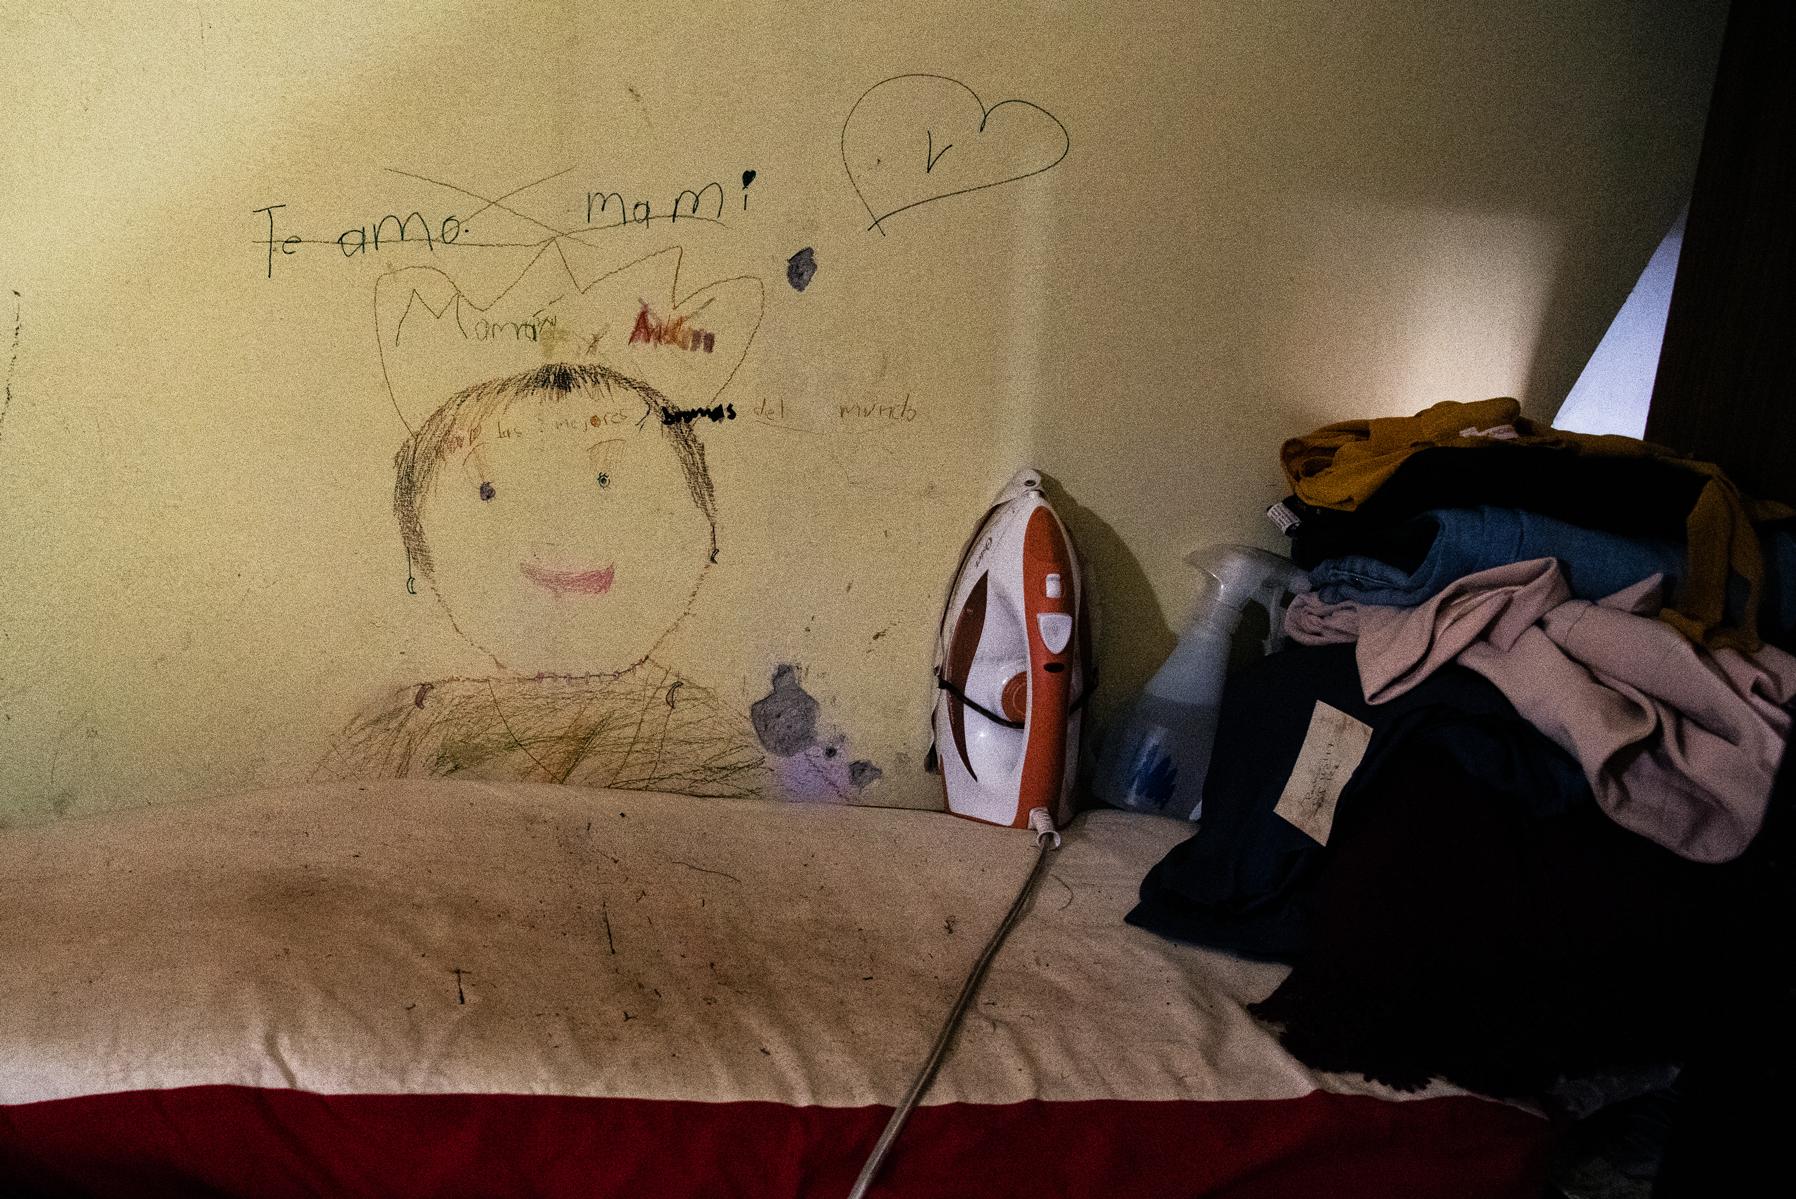 Burro para planchar con una plancha, ropa doblada y un dibujo que dice "Te amo mami" ilustrado sobre la pared